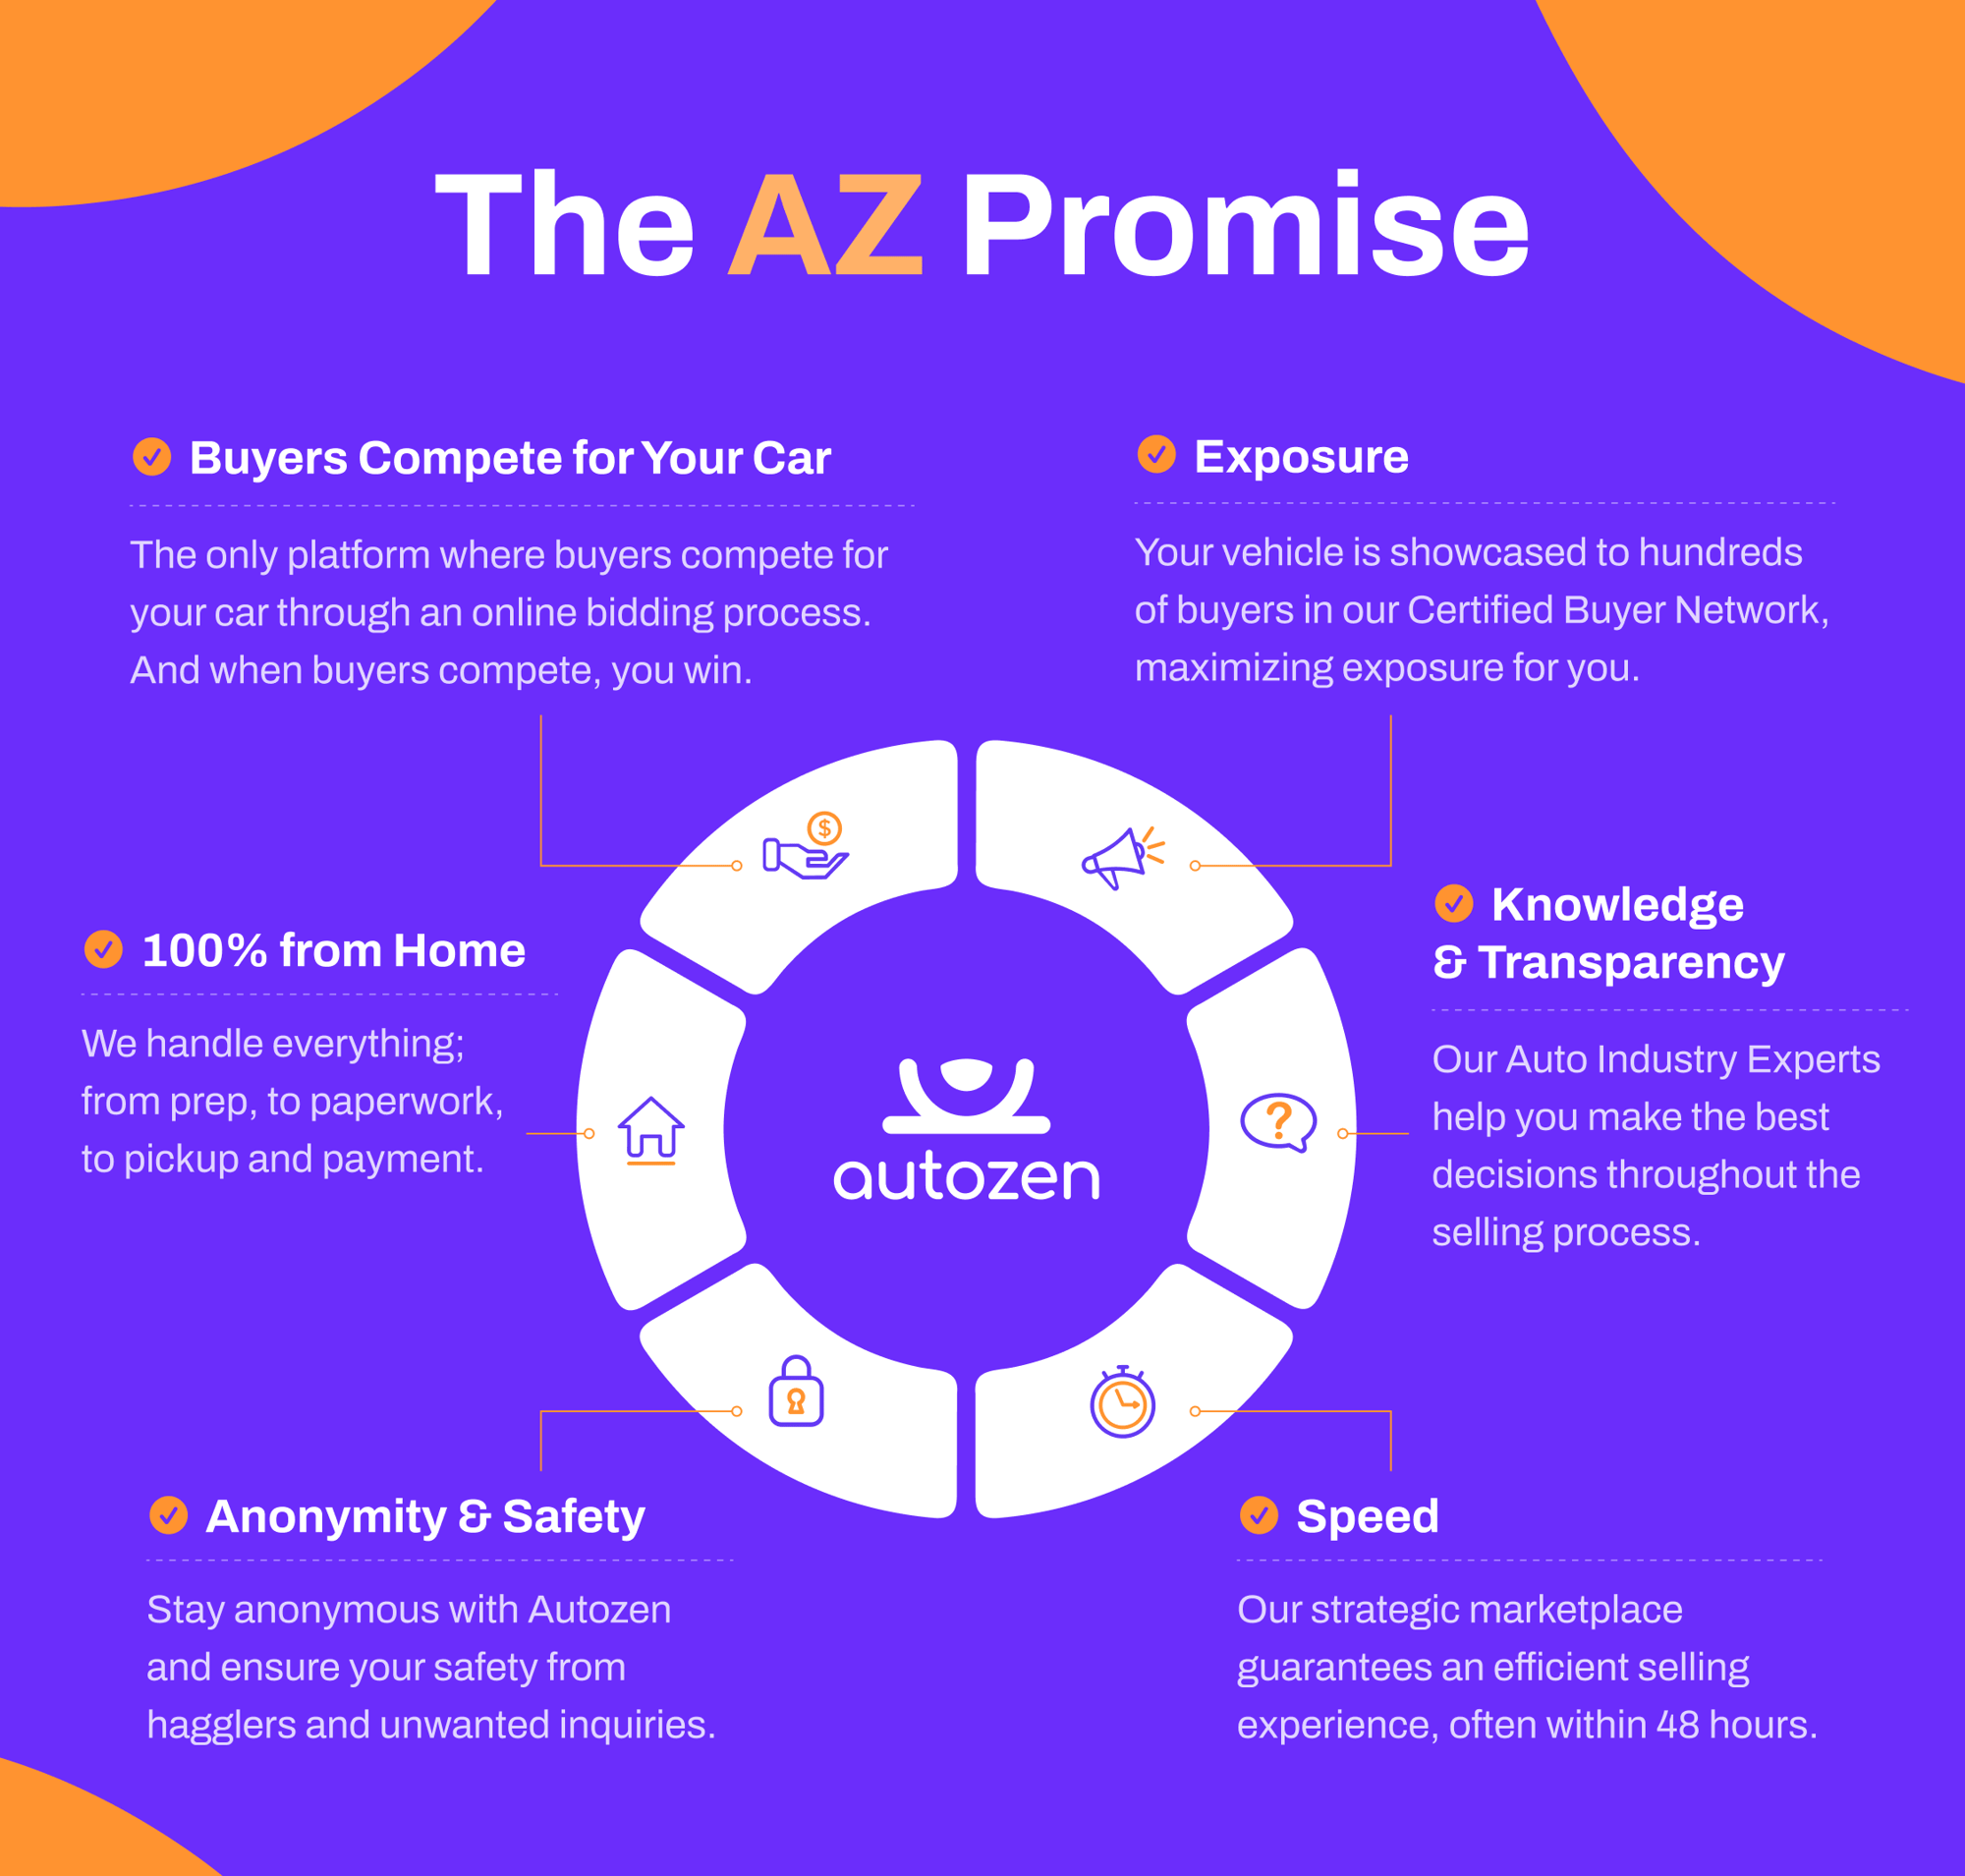 az-promise-infographic-revised-nov29